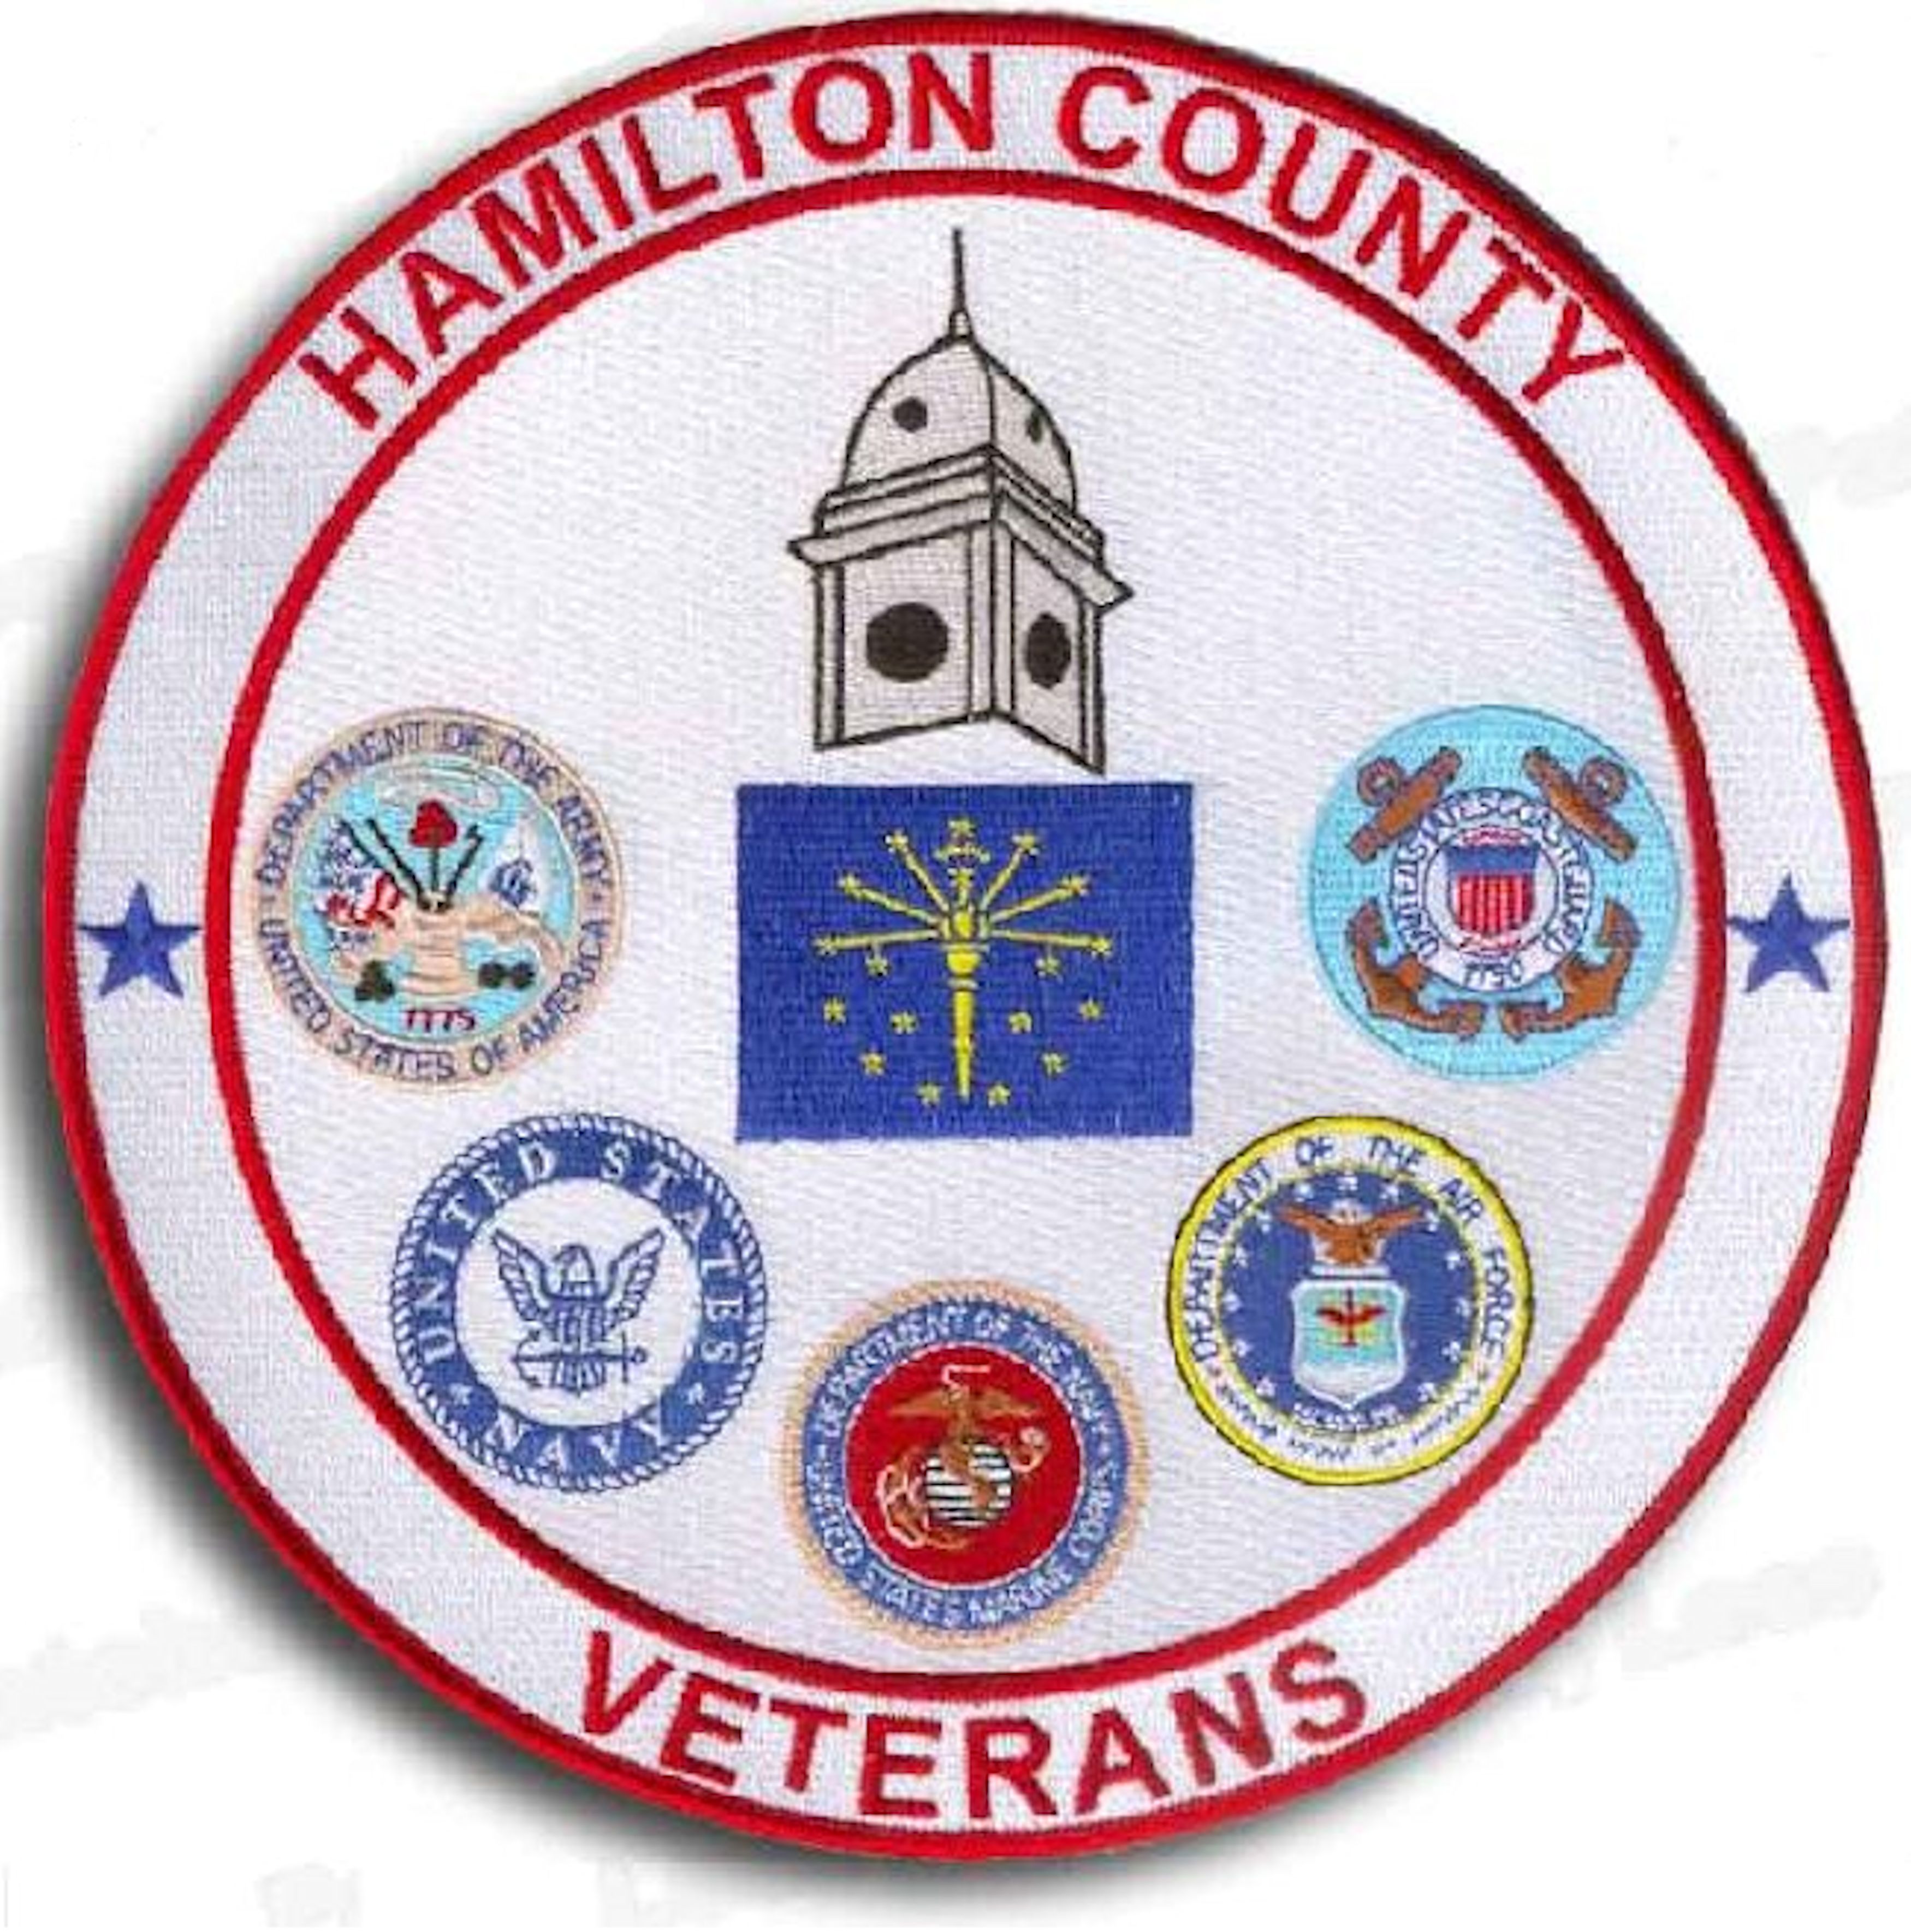 Hamilton County Veterans Corporation logo